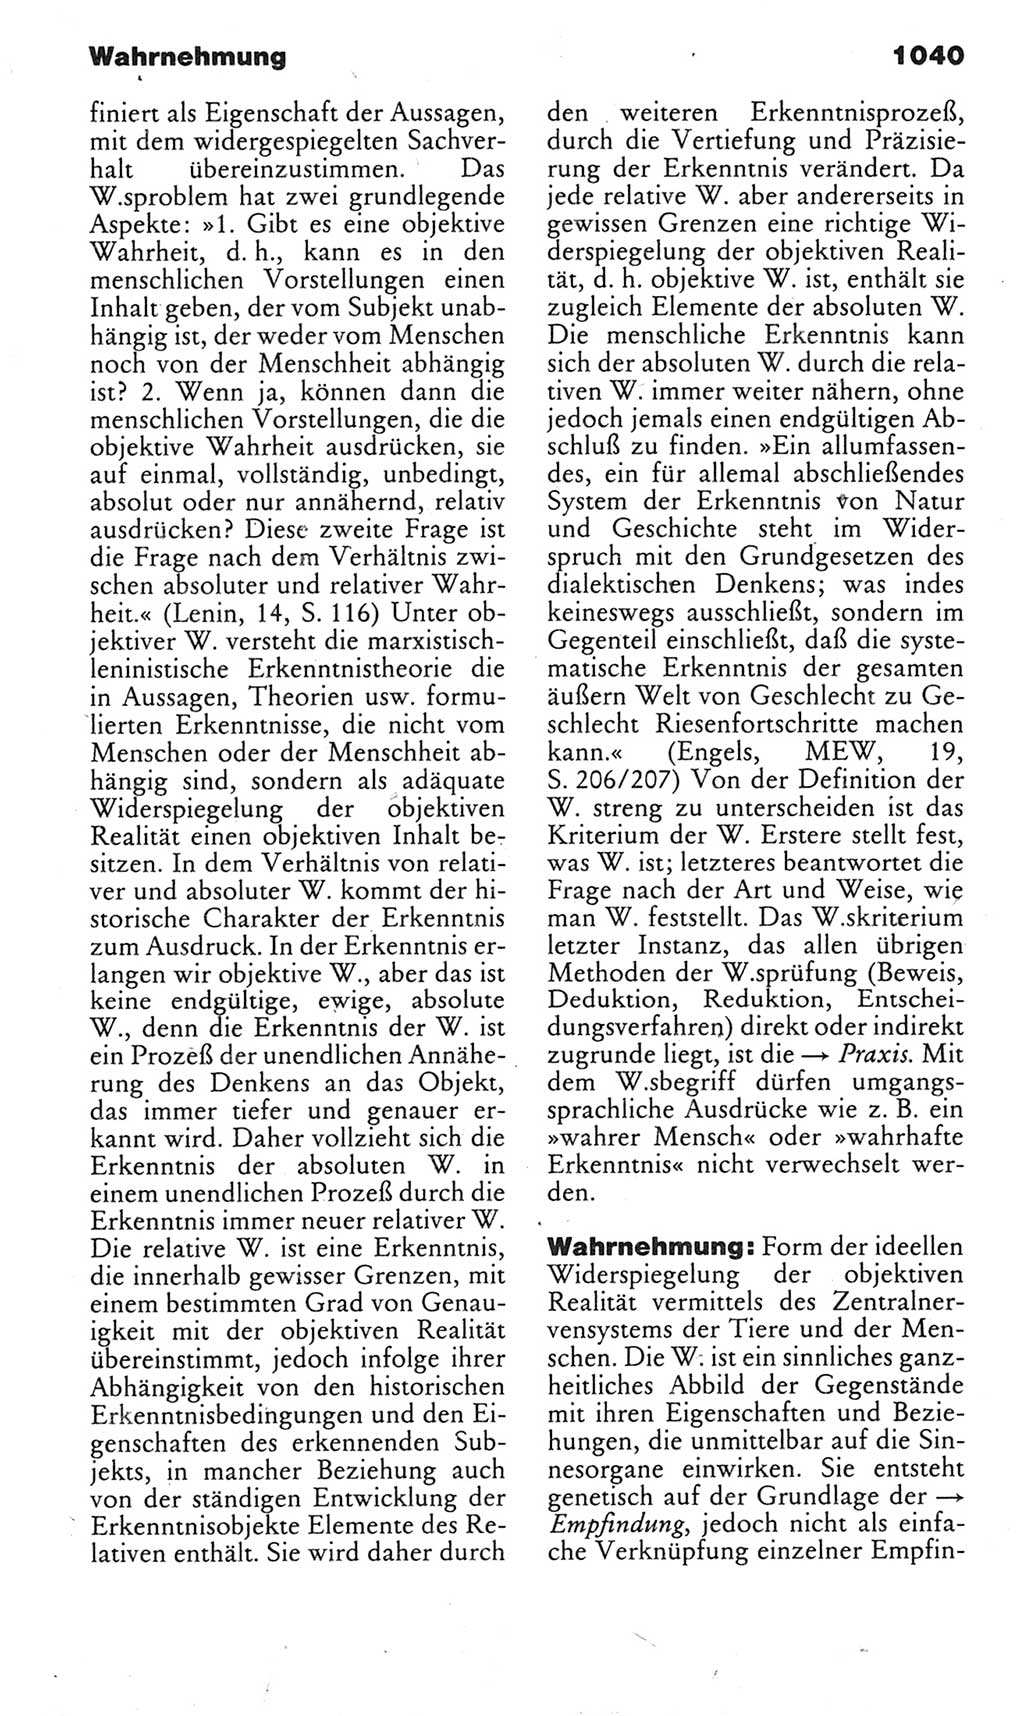 Kleines politisches Wörterbuch [Deutsche Demokratische Republik (DDR)] 1983, Seite 1040 (Kl. pol. Wb. DDR 1983, S. 1040)